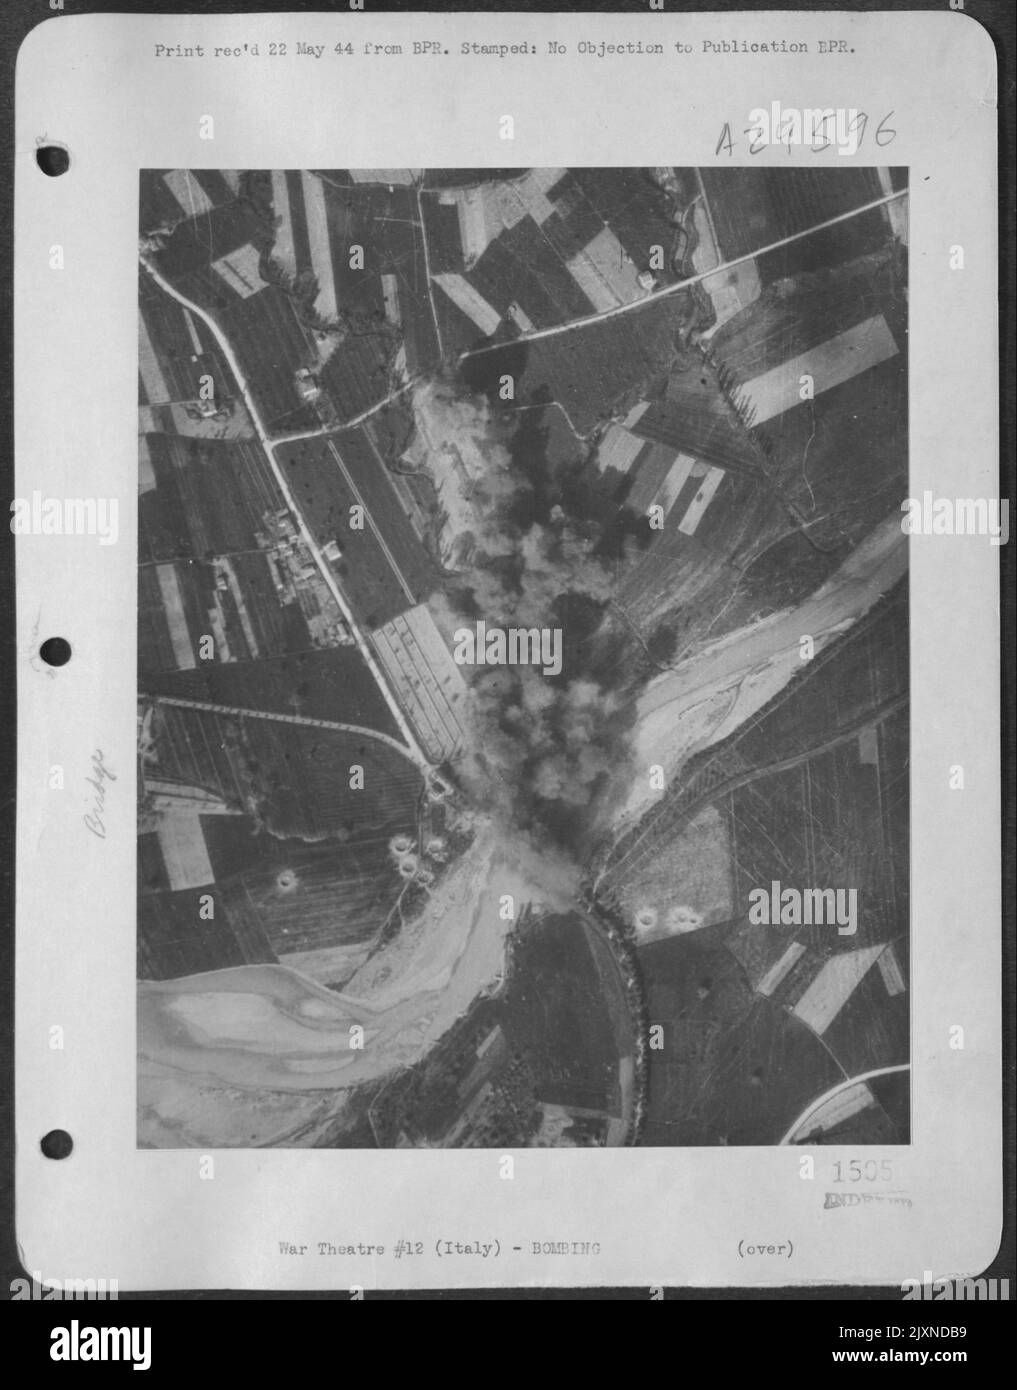 Dopo che i ponti ferroviari furono ben tagliati in Medio Italia, i Medium Bombers dell'Aeronautica militare tattica andarono dopo i ponti stradali, perché quando gli Hun furono negati l'uso dei treni di fornitura, si rivolse al trasporto a motore. Qui, il Nord America B-25S hanno fatto saltare il Foto Stock